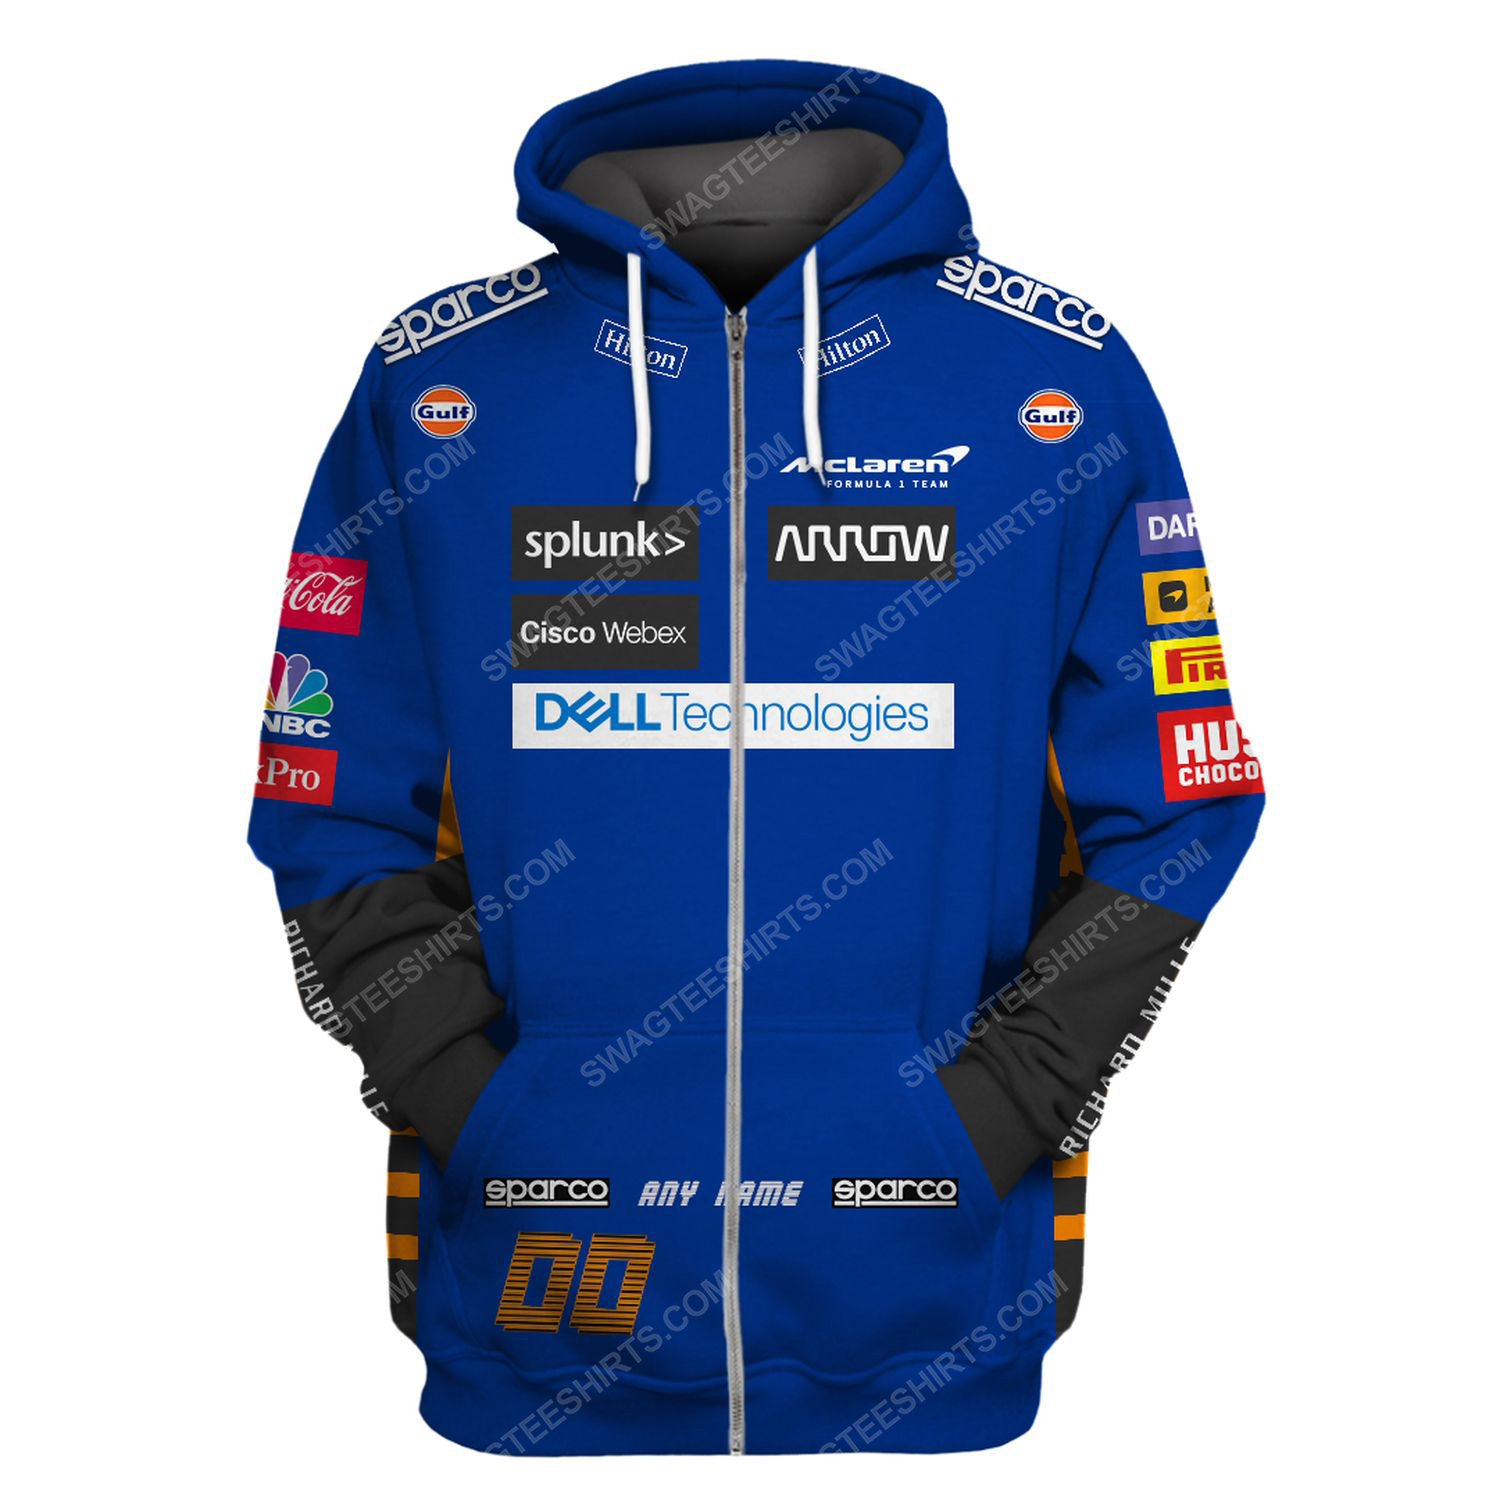 Dell technologies racing team motorsport full printing zip hoodie